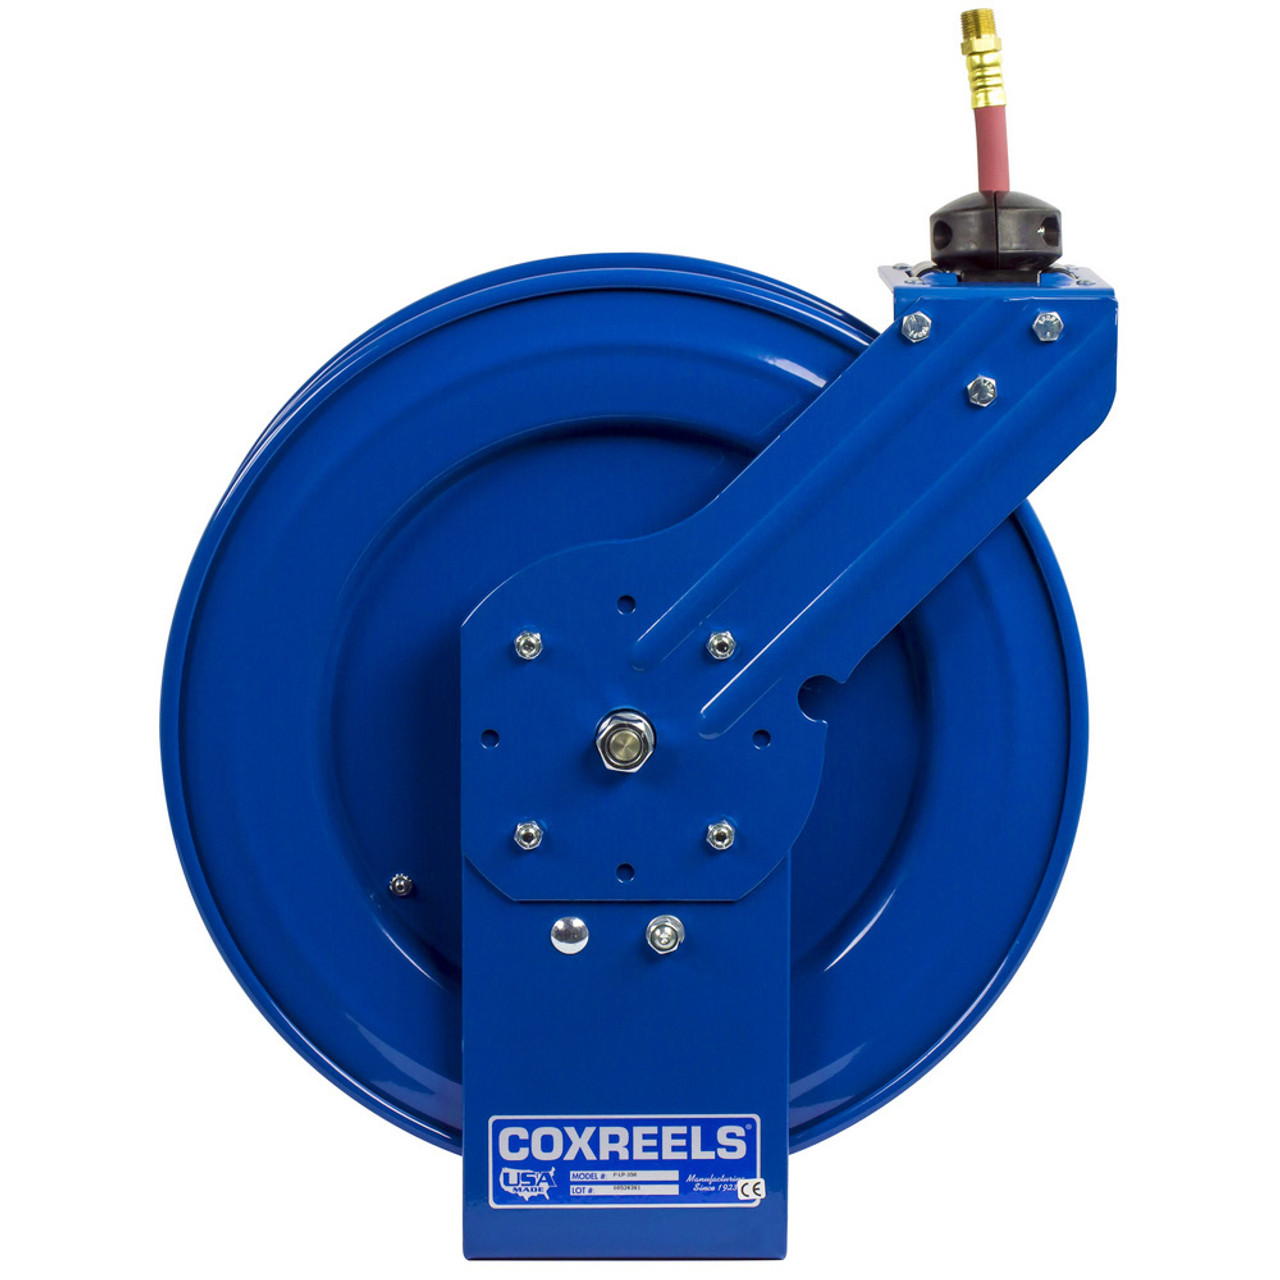 Coxreels P-MP-330 Medium Pressure Spring Rewind Hose Reel